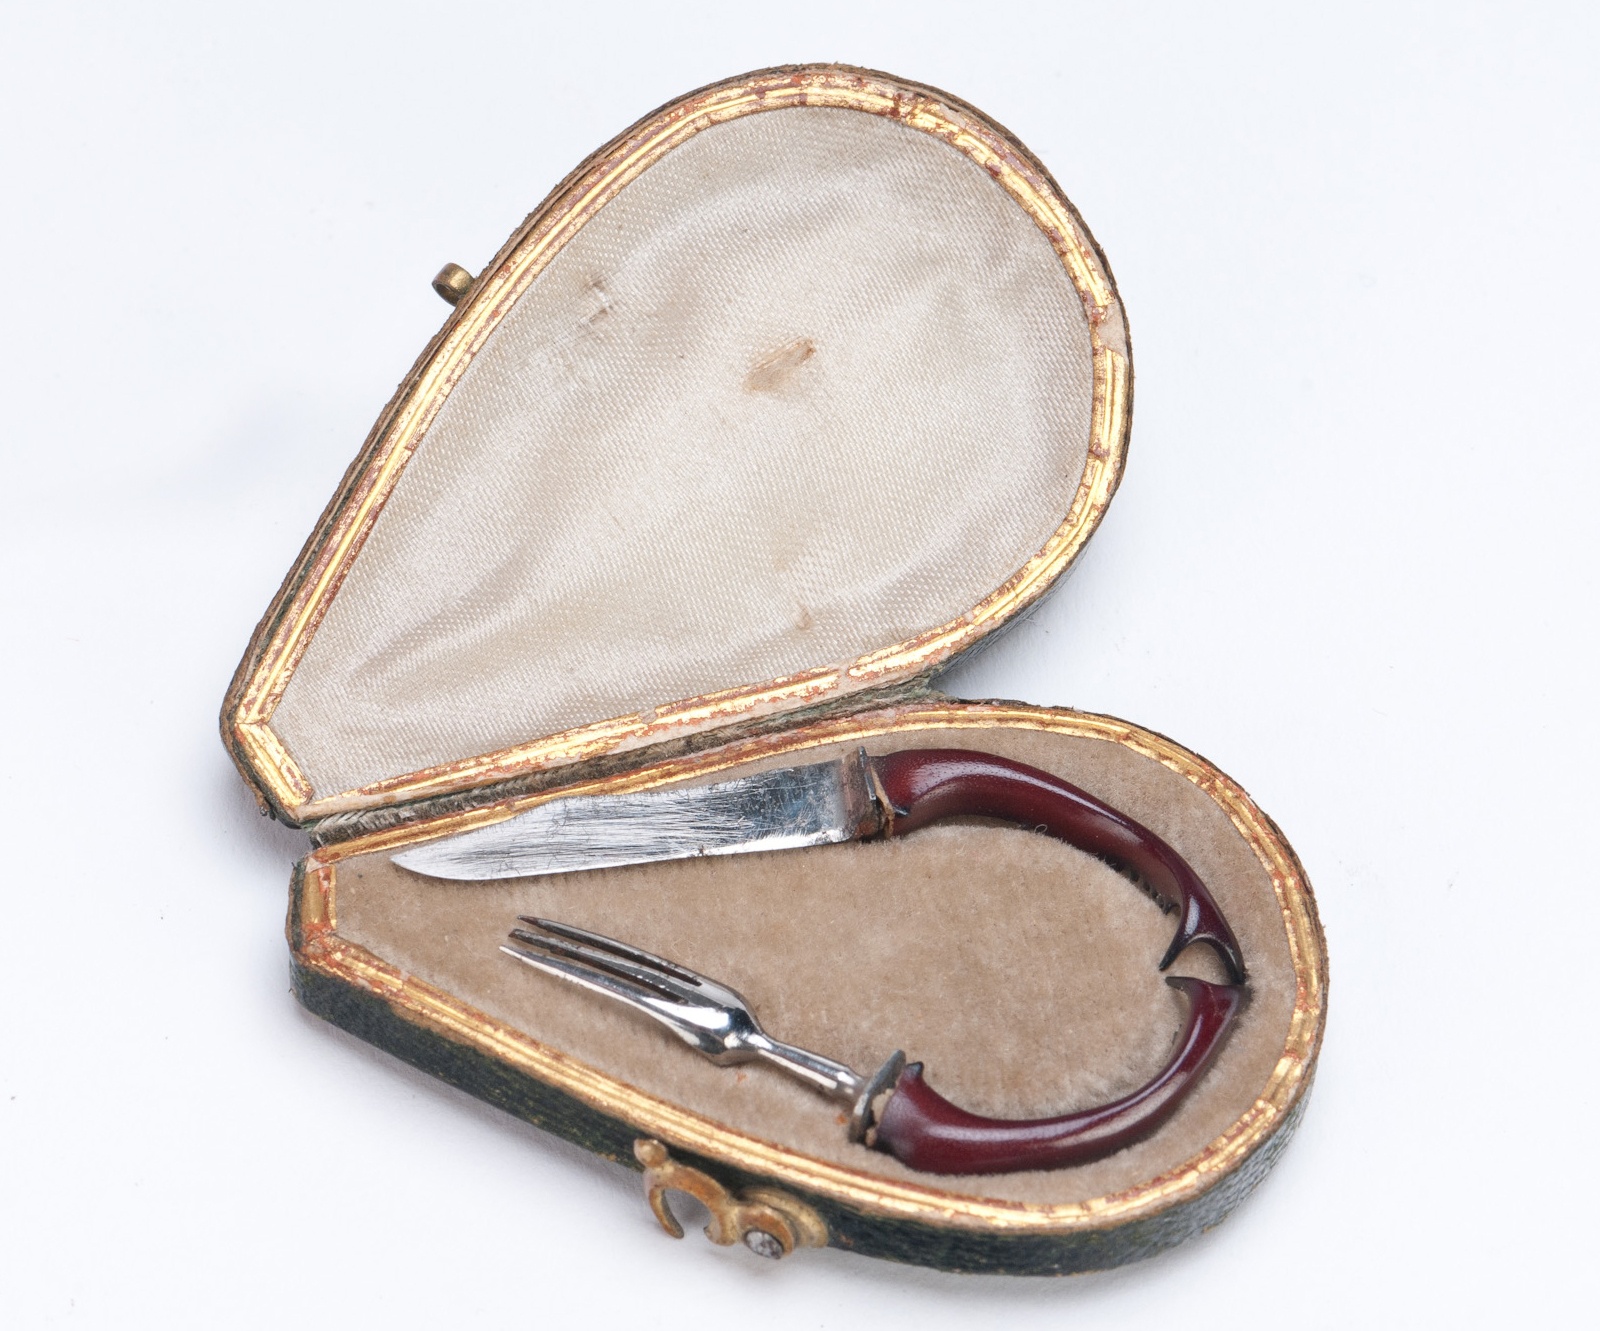 Kés és villa bőr tokban (Városi Képtár -Hetedhét Játékmúzeum, Székesfehérvár CC BY-NC-SA)